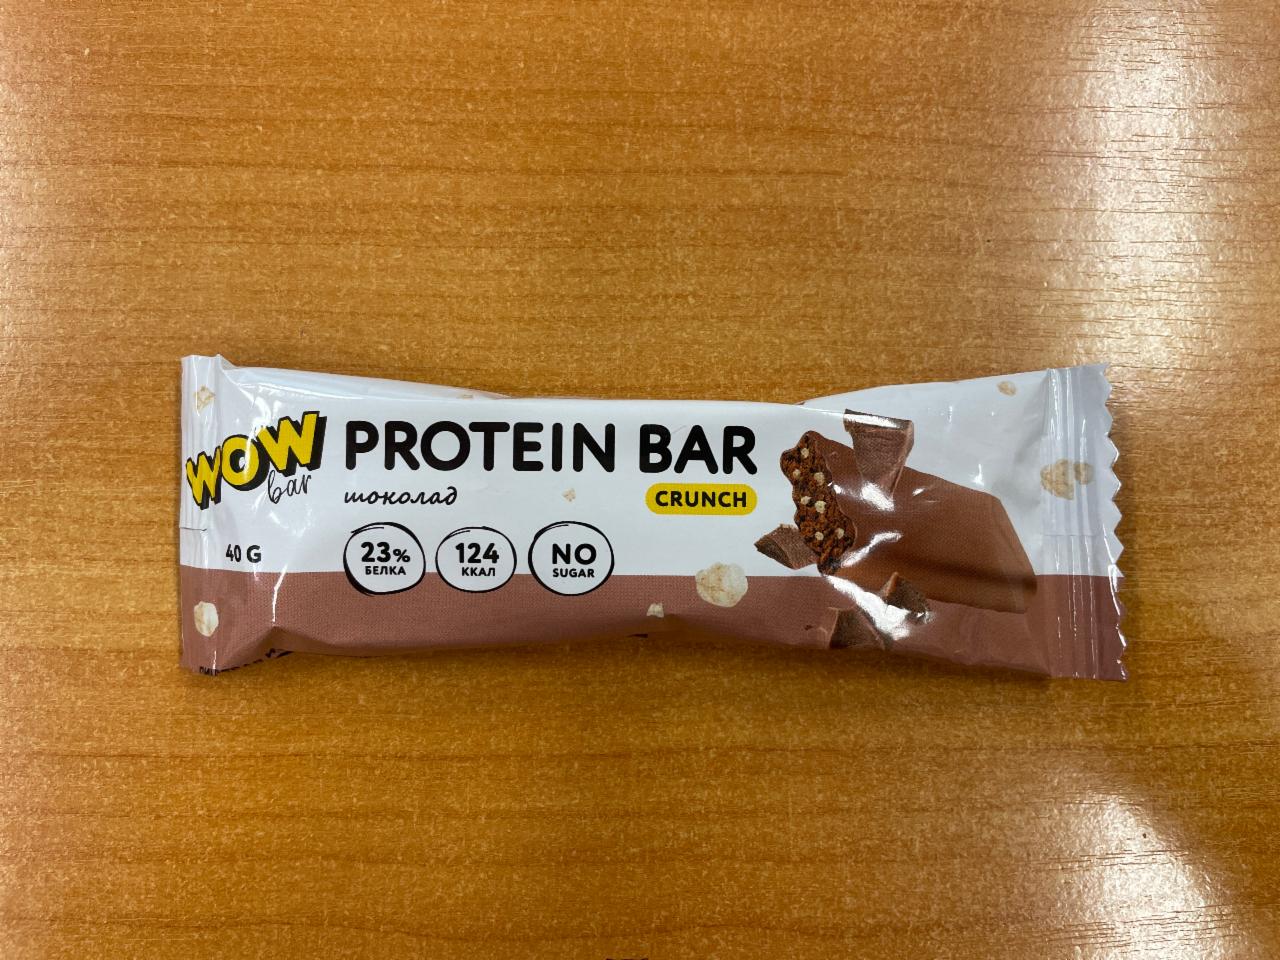 Фото - Батончик с содержанием протеина со вкусом шоколад crunch Wow bar